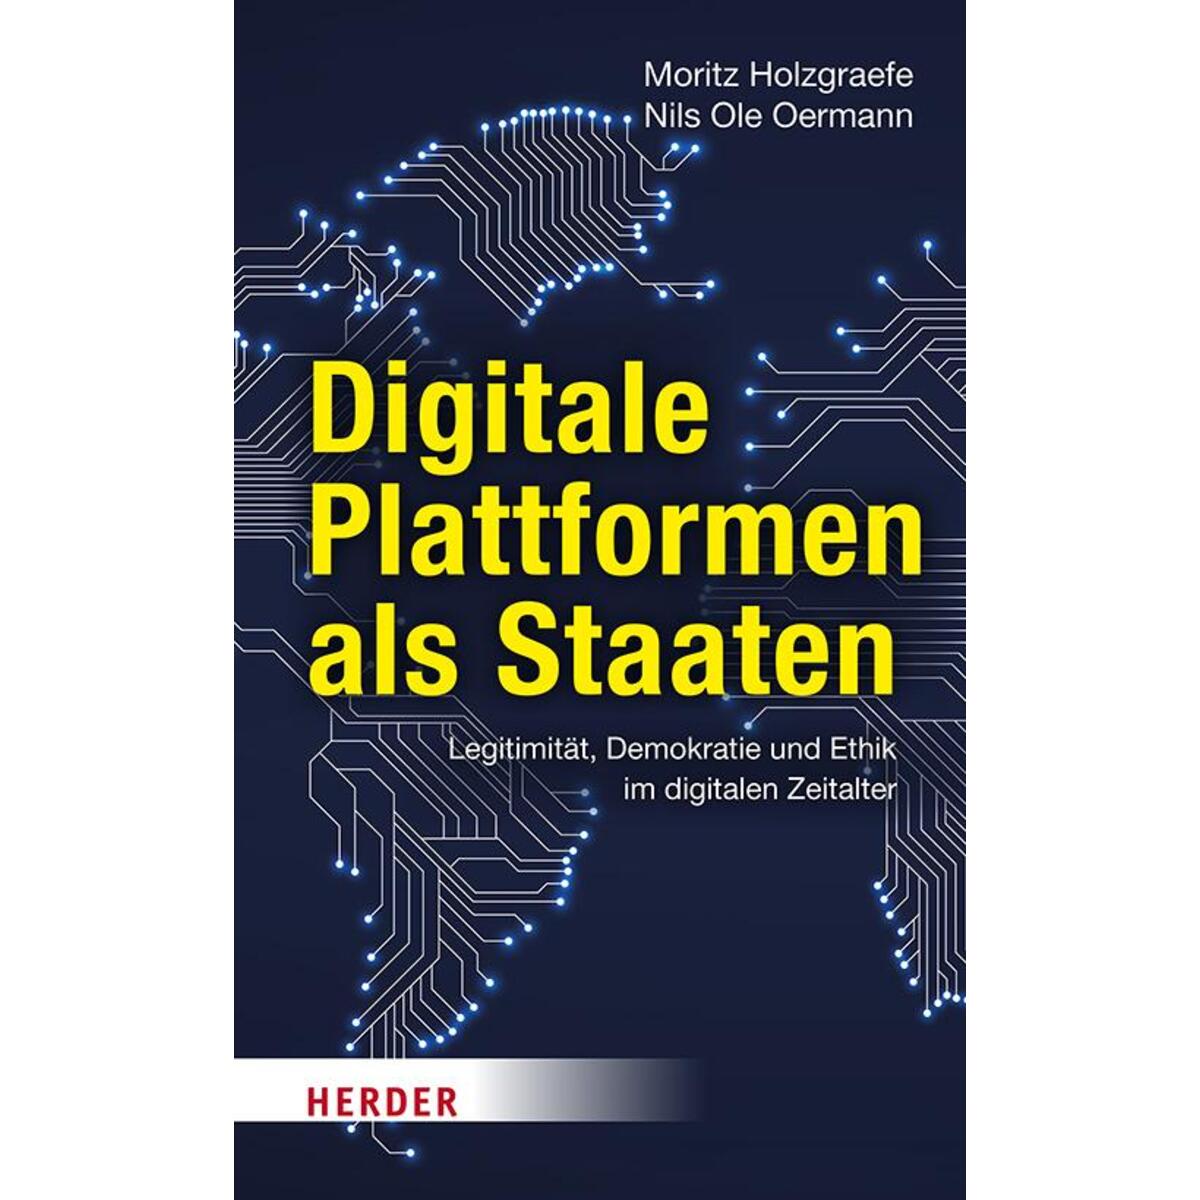 Digitale Plattformen als Staaten von Herder Verlag GmbH